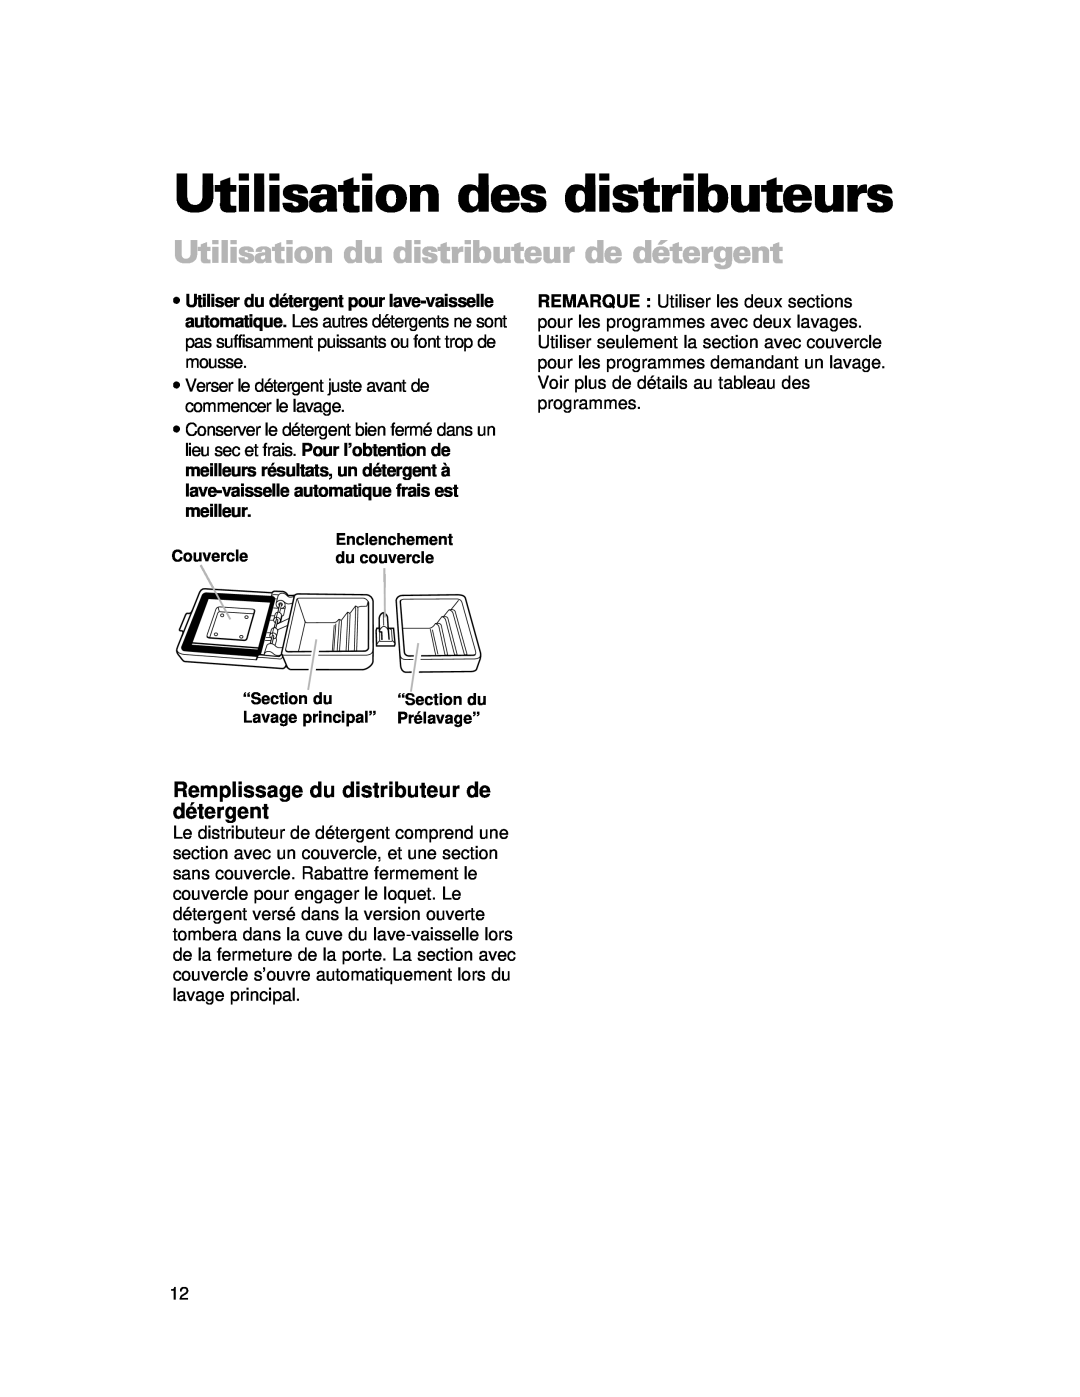 Whirlpool 910 Series warranty Utilisation des distributeurs, Utilisation du distributeur de détergent 